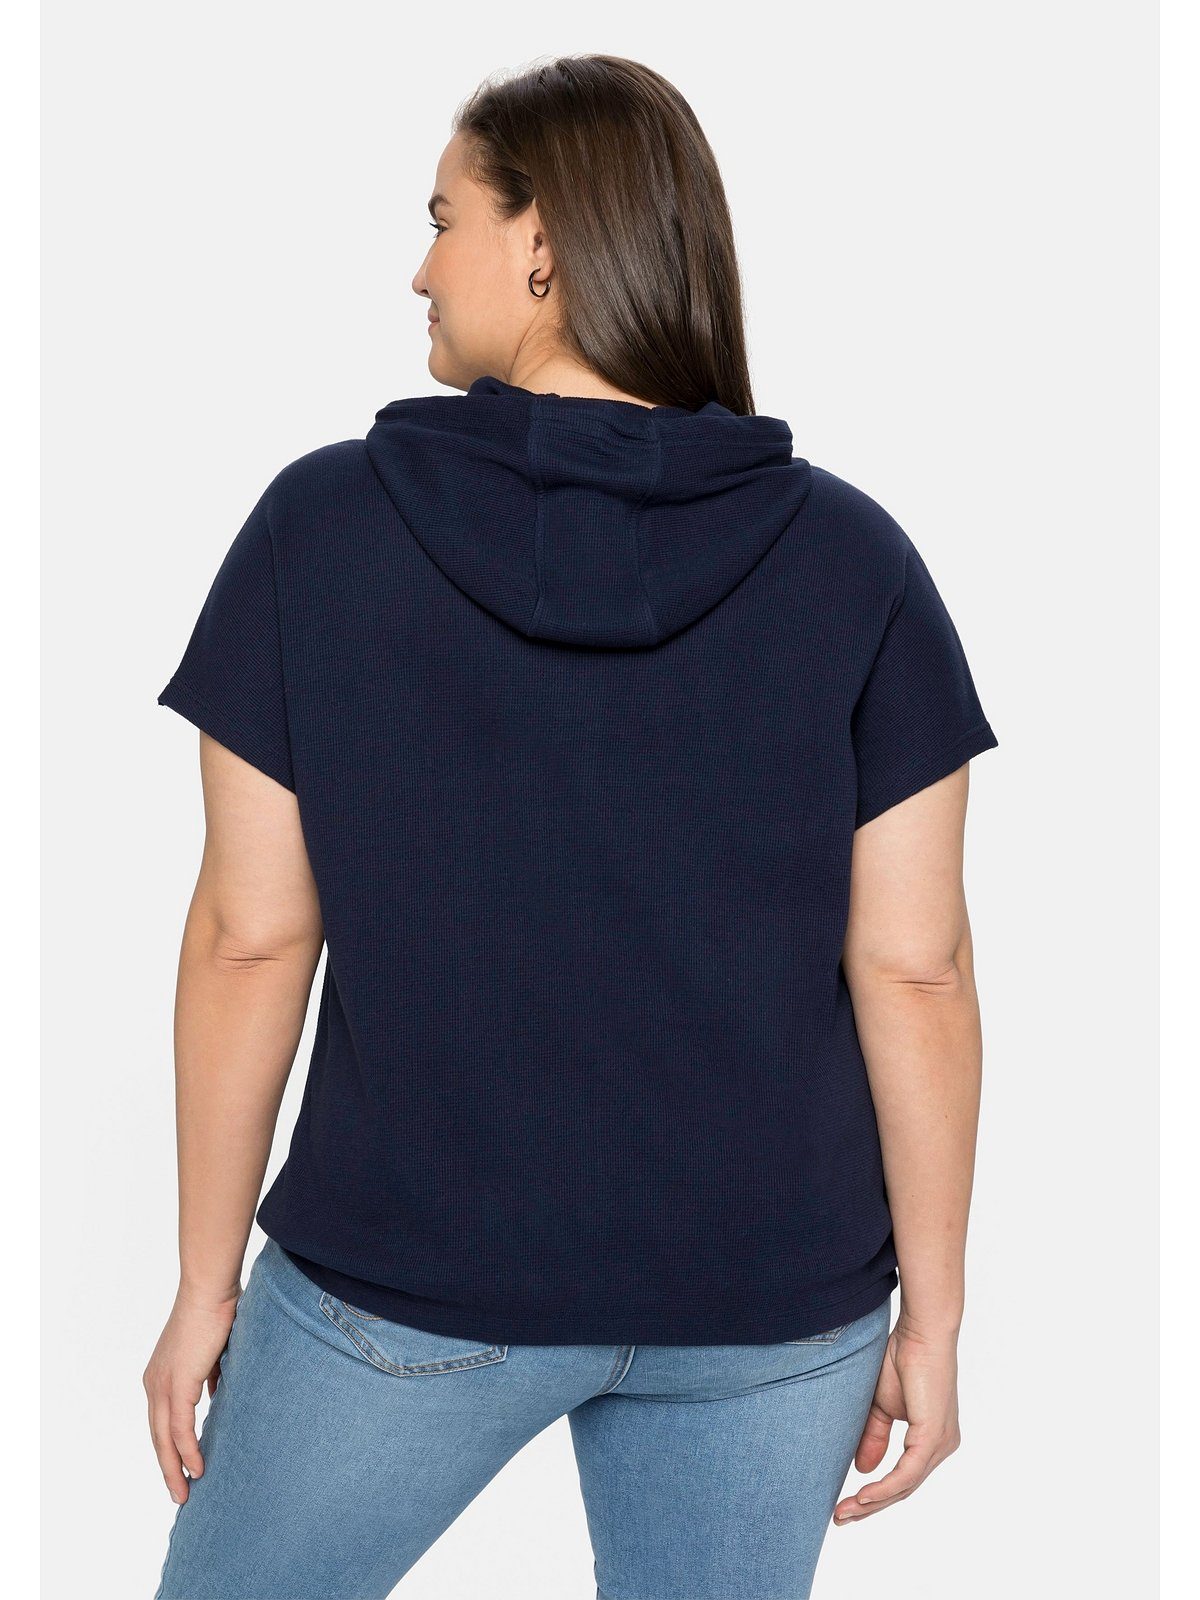 Sheego T-Shirt Große Größen in Kapuze, Waffelpiqué-Struktur mit